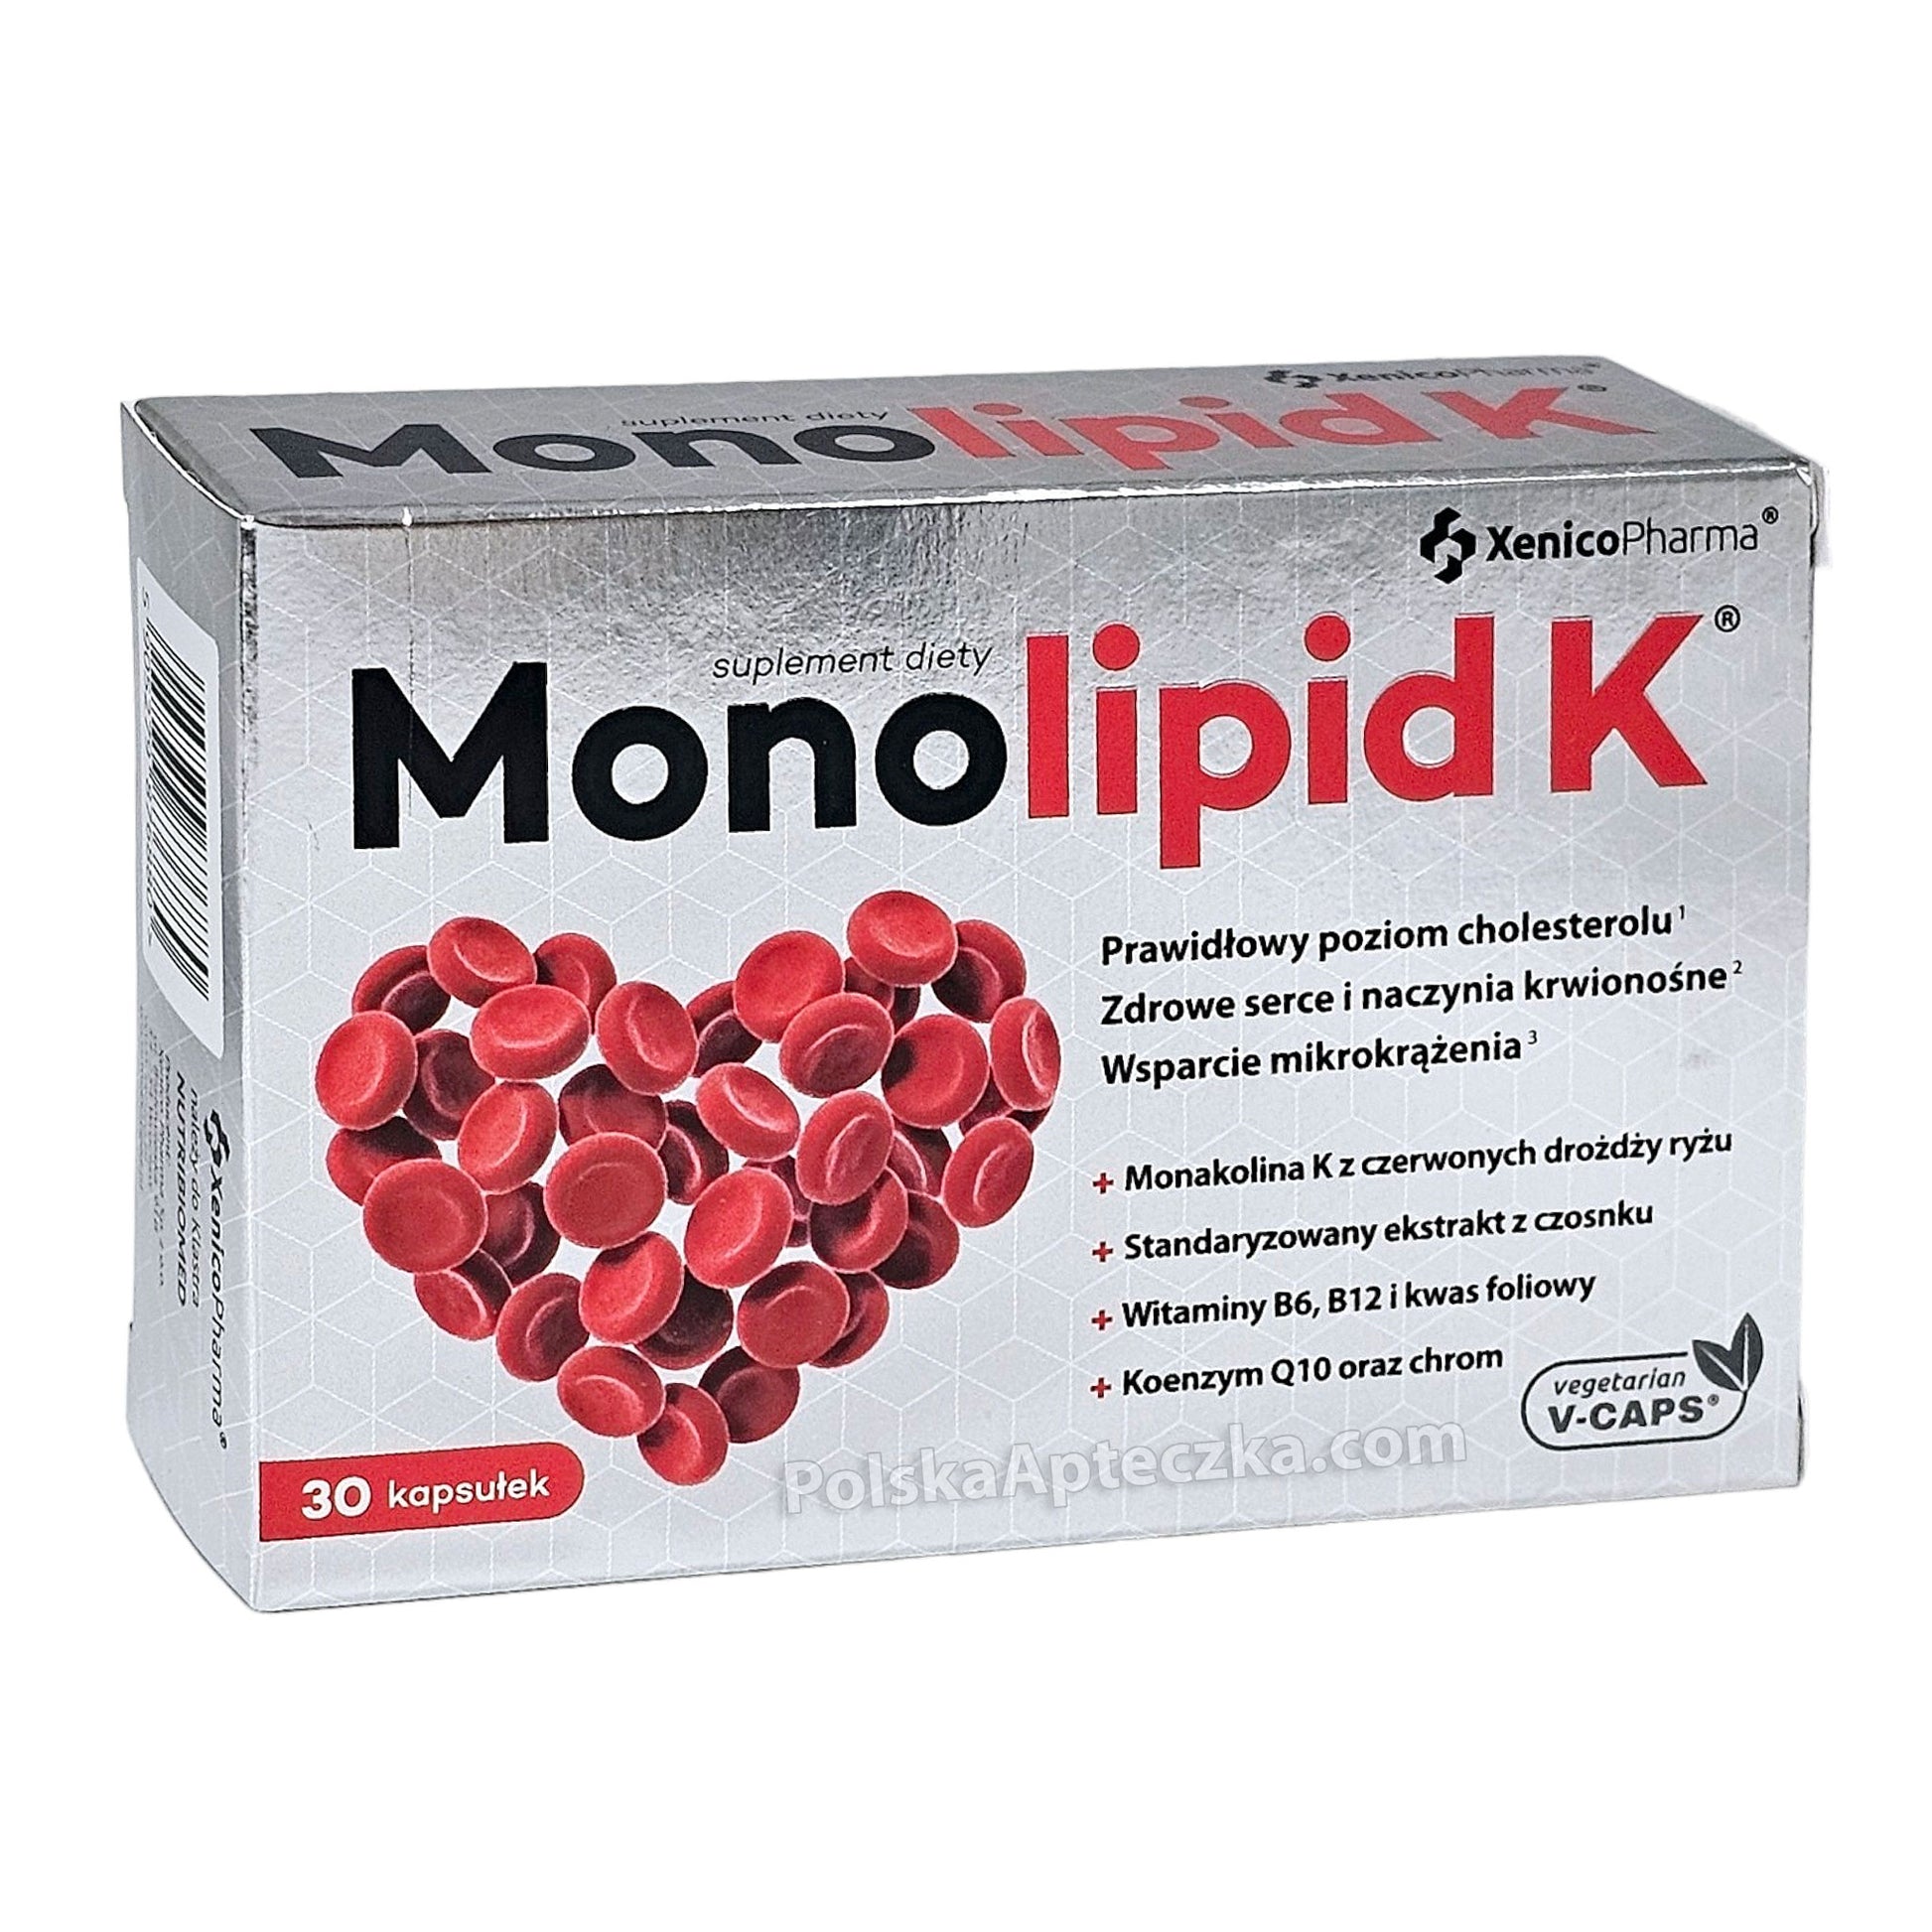 monolipid k capsules